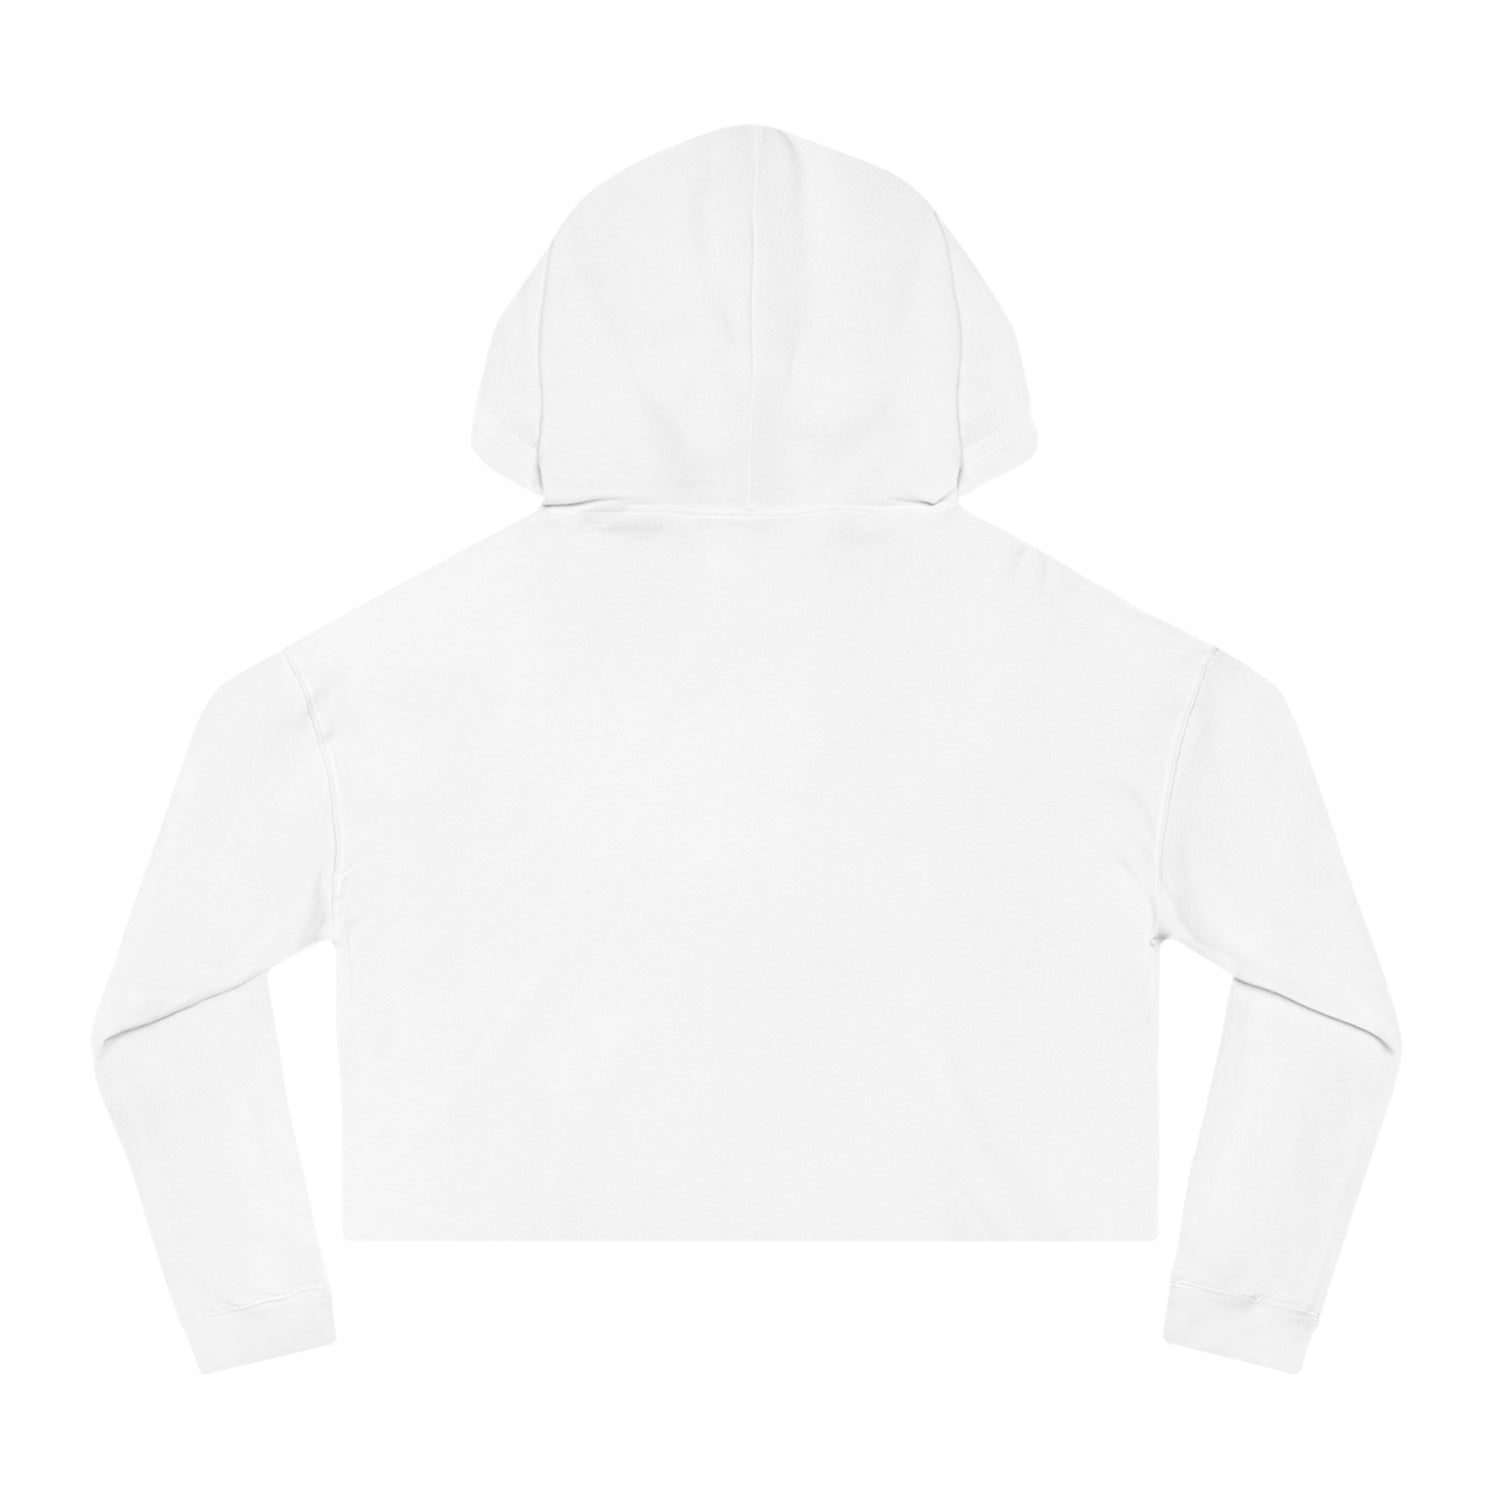 Gen Z Cropped Hooded Sweatshirt